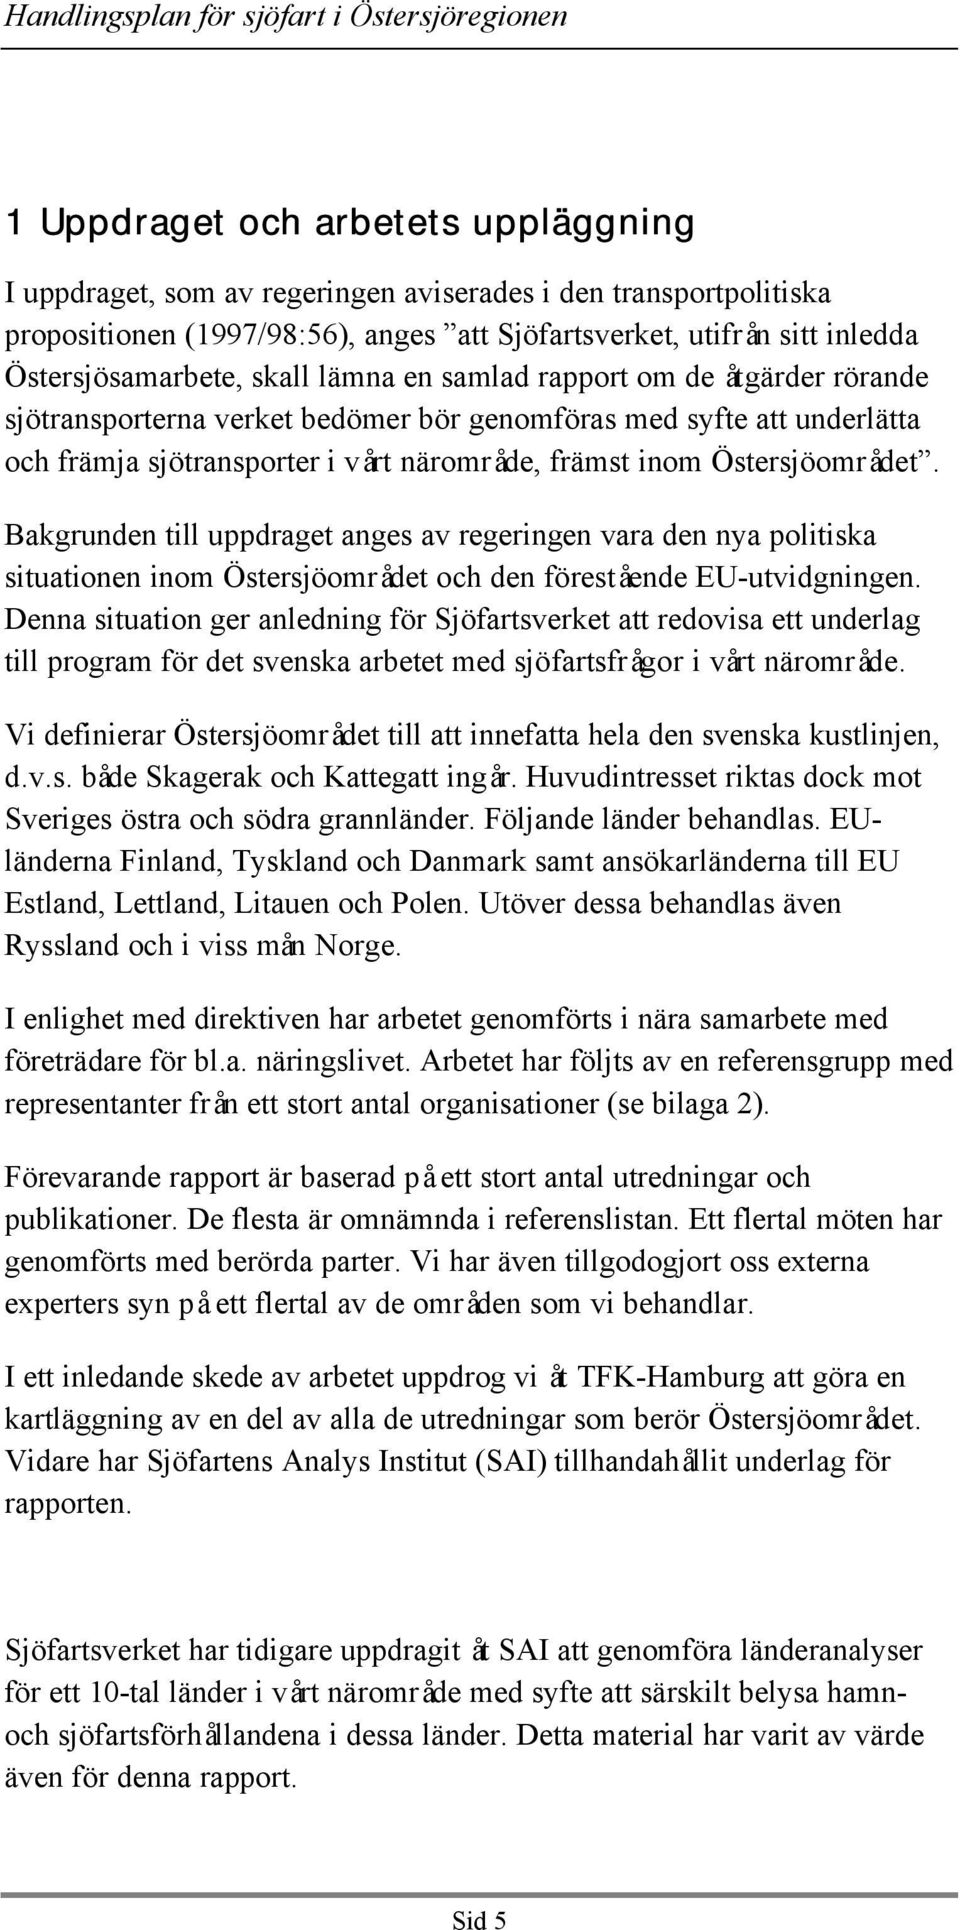 Bakgrunden till uppdraget anges av regeringen vara den nya politiska situationen inom Östersjöområdet och den förestående EU-utvidgningen.